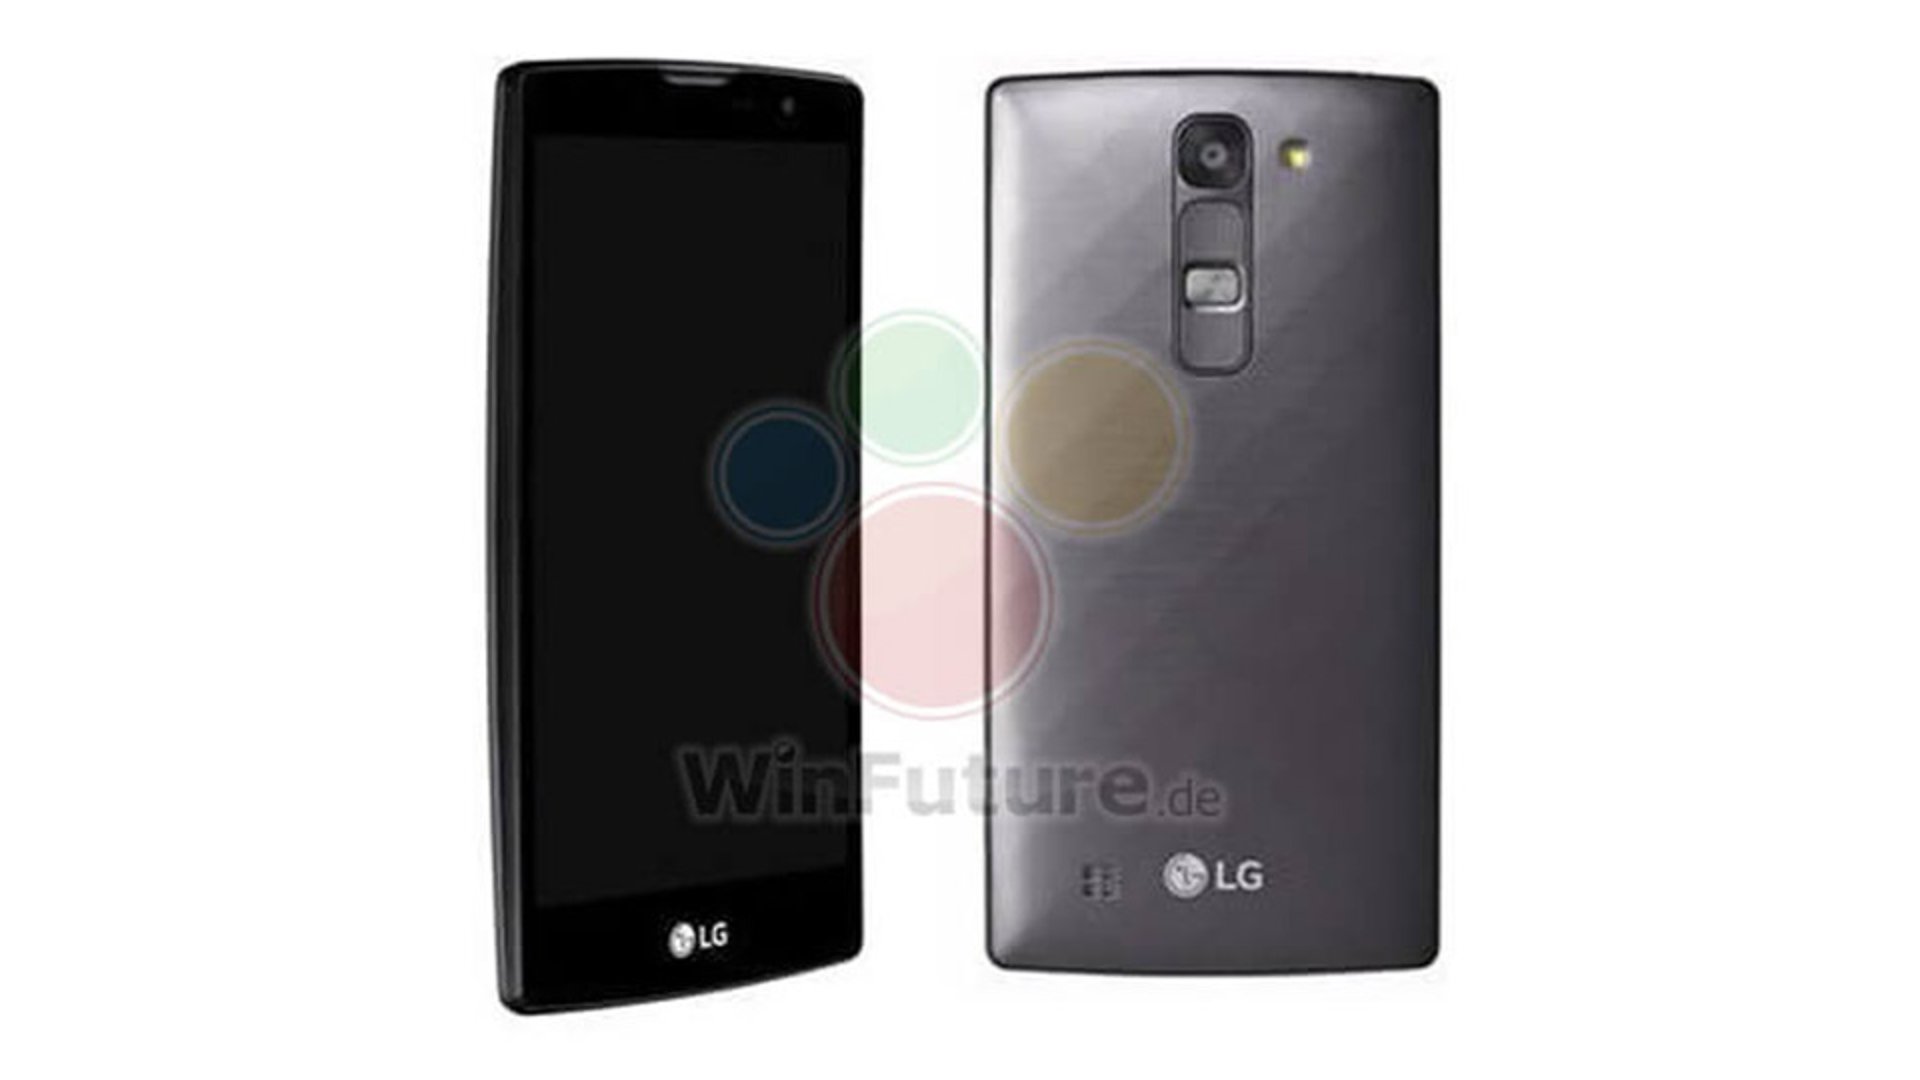 LG G4c - Leaked Image